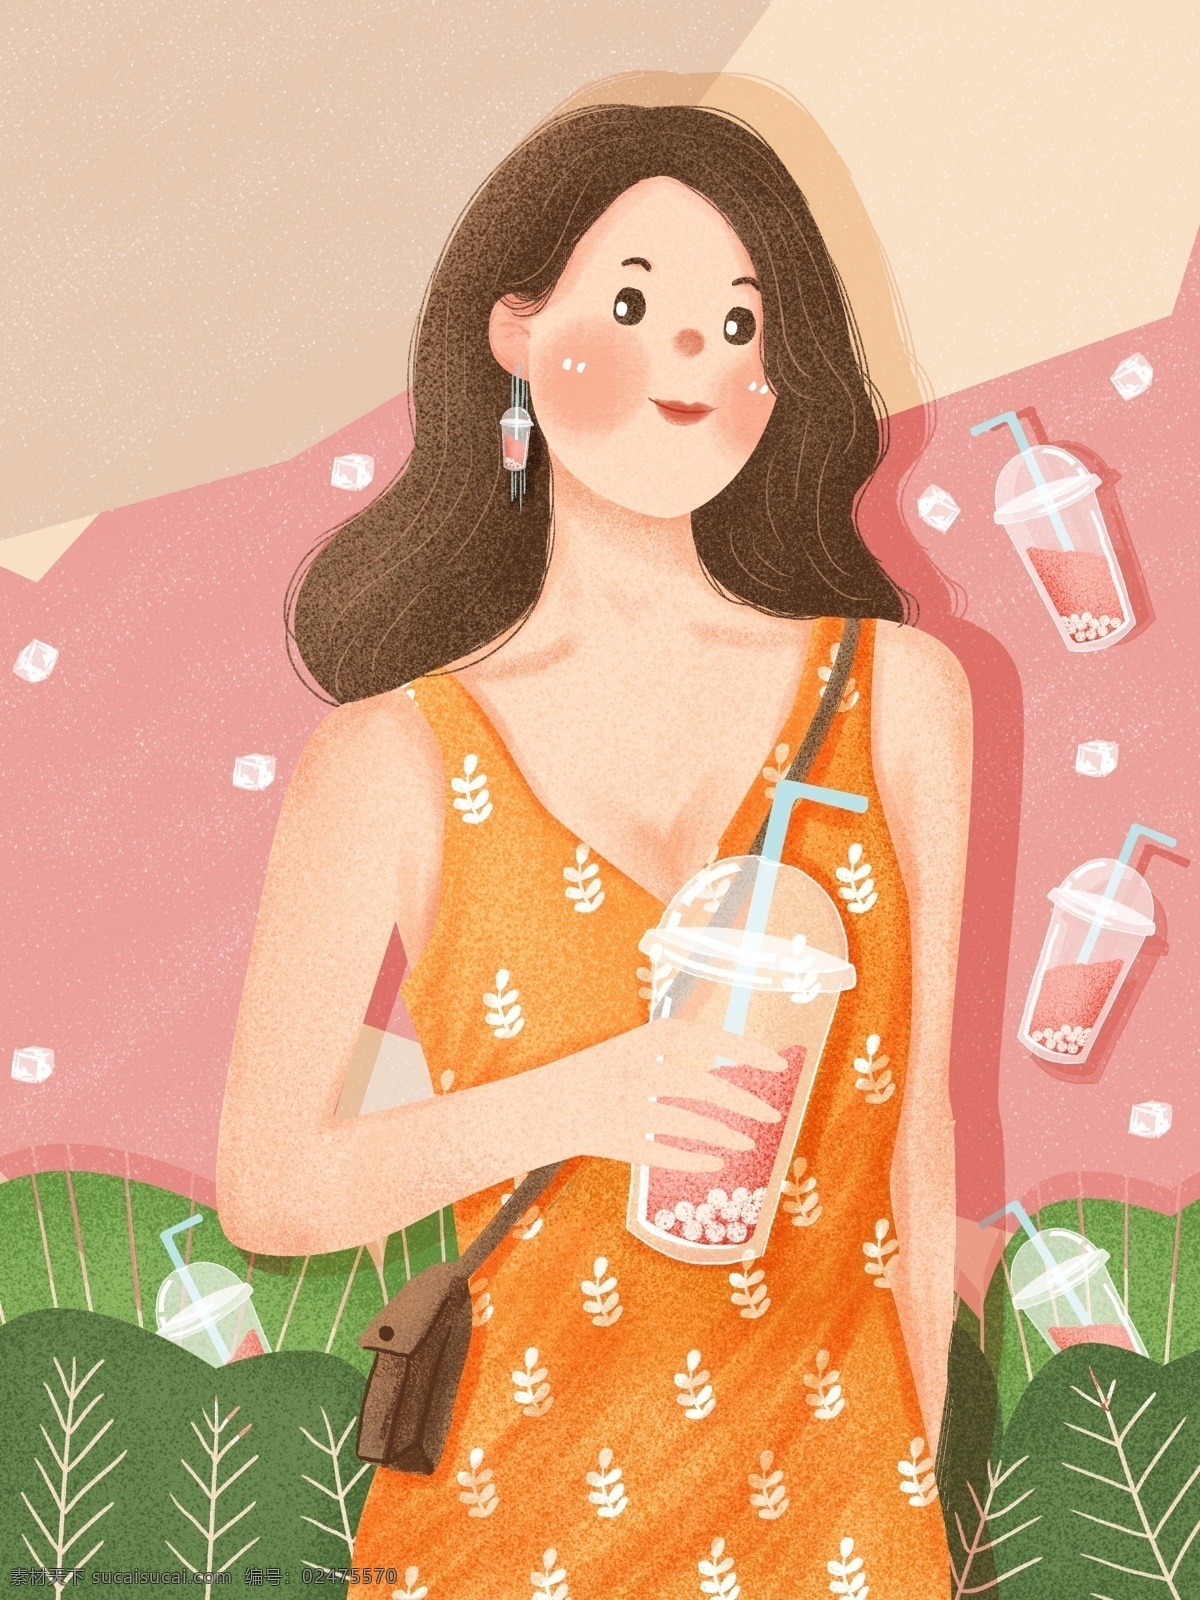 粉色 彩绘 创意 插画 夏季 饮料 女孩 背景 粉色背景 渐变 原创 唯美